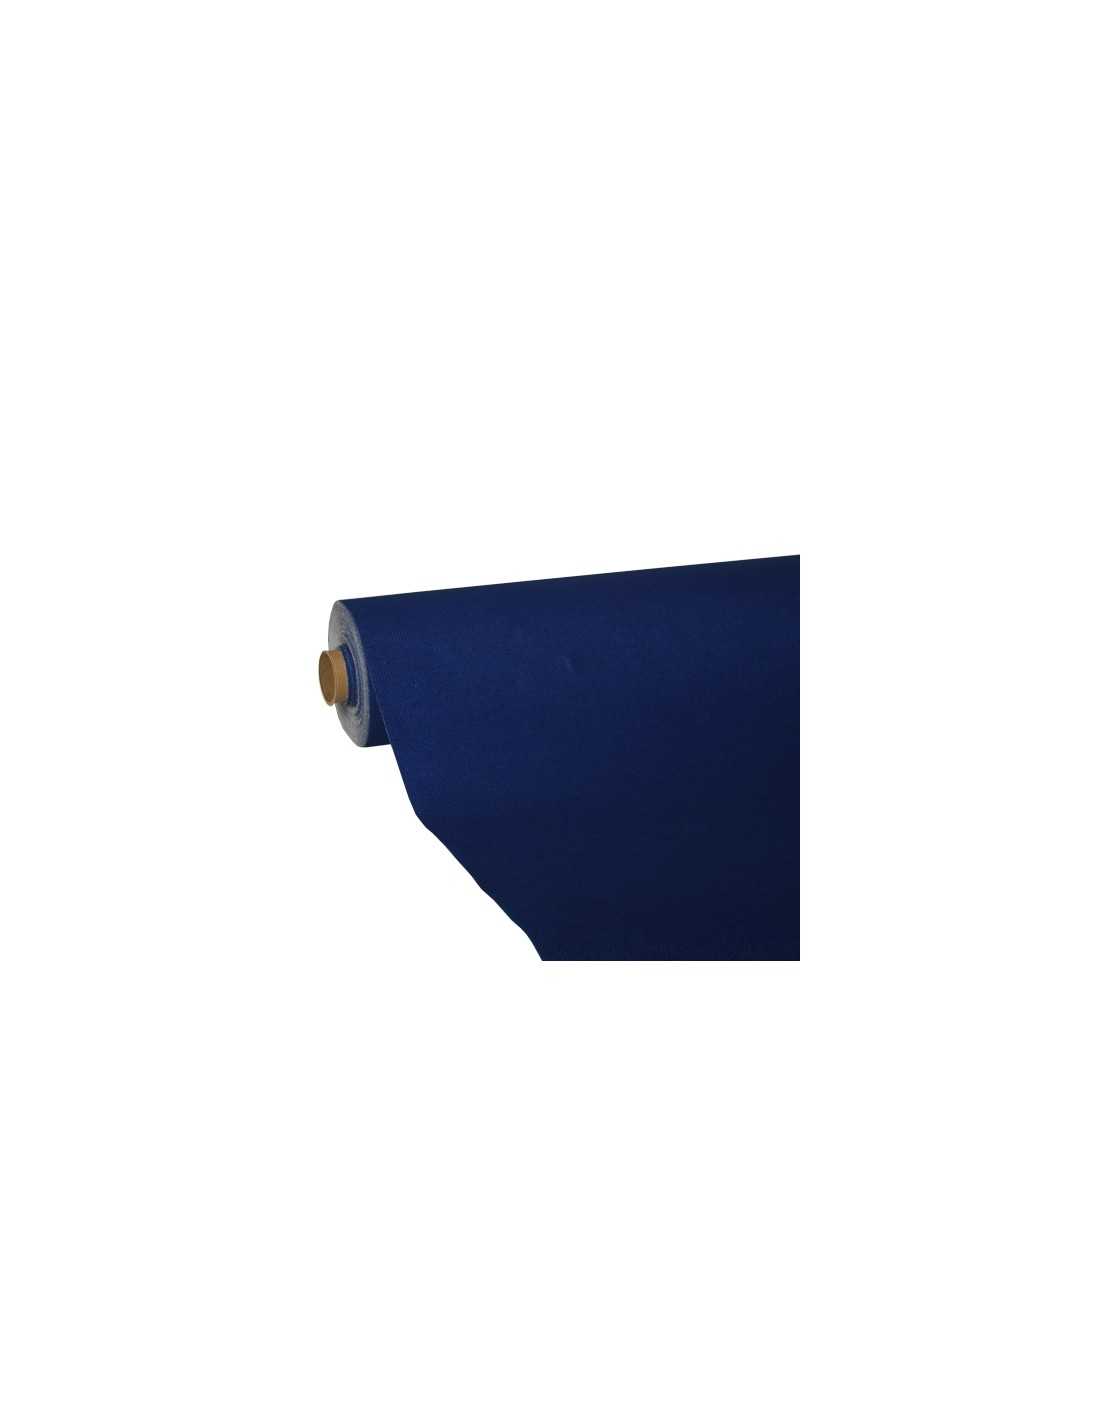 Mantel de Papel Rollo Azul Claro 1,2x7m (25 Uds)